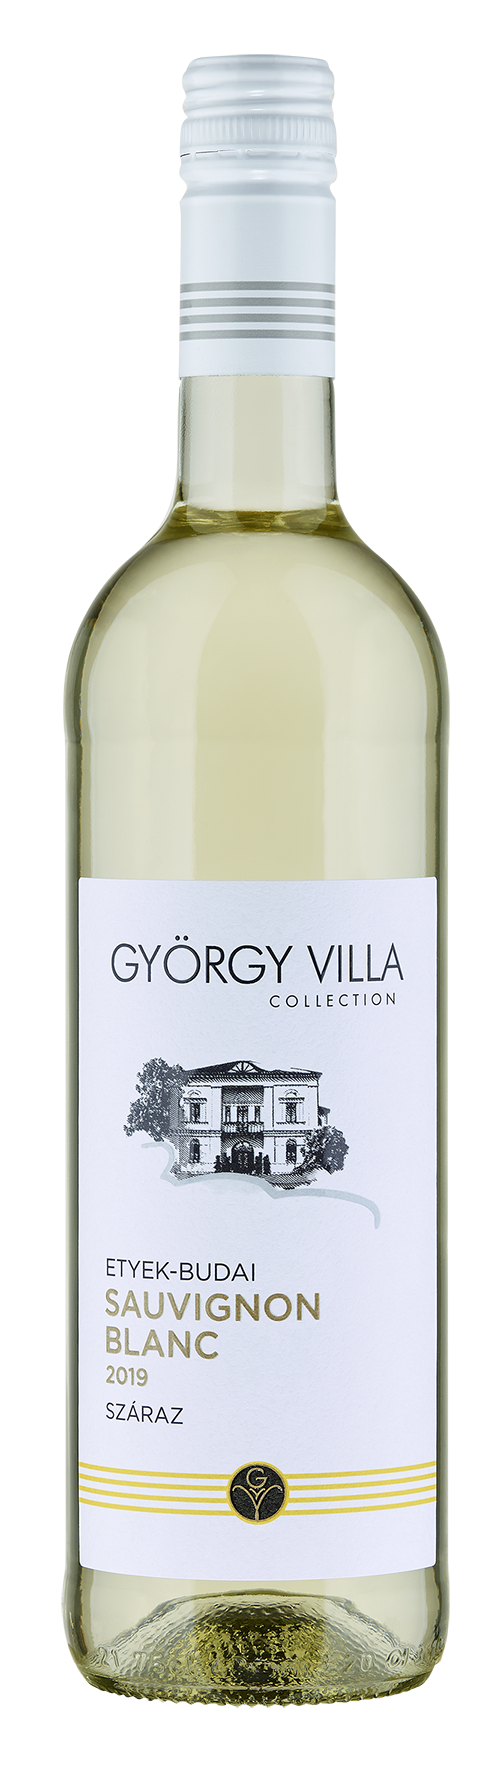 György-Villa Collection Etyek-Budai Sauvignon Blanc 2016